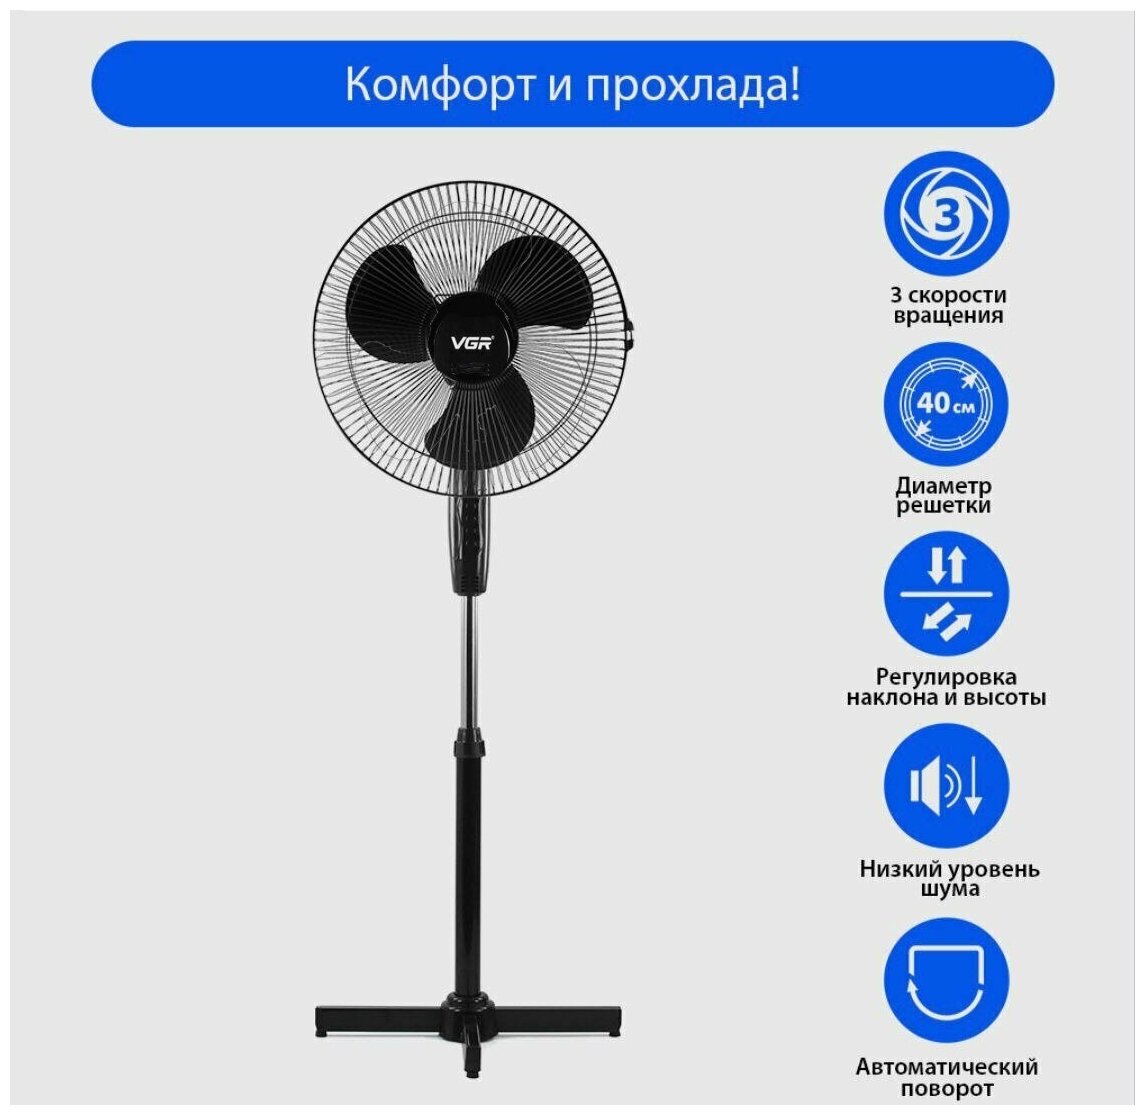 Вентилятор VGR напольный для дома  вентилятор бытовой осевой  охлаждающий вентилятор с поворотным механизмом